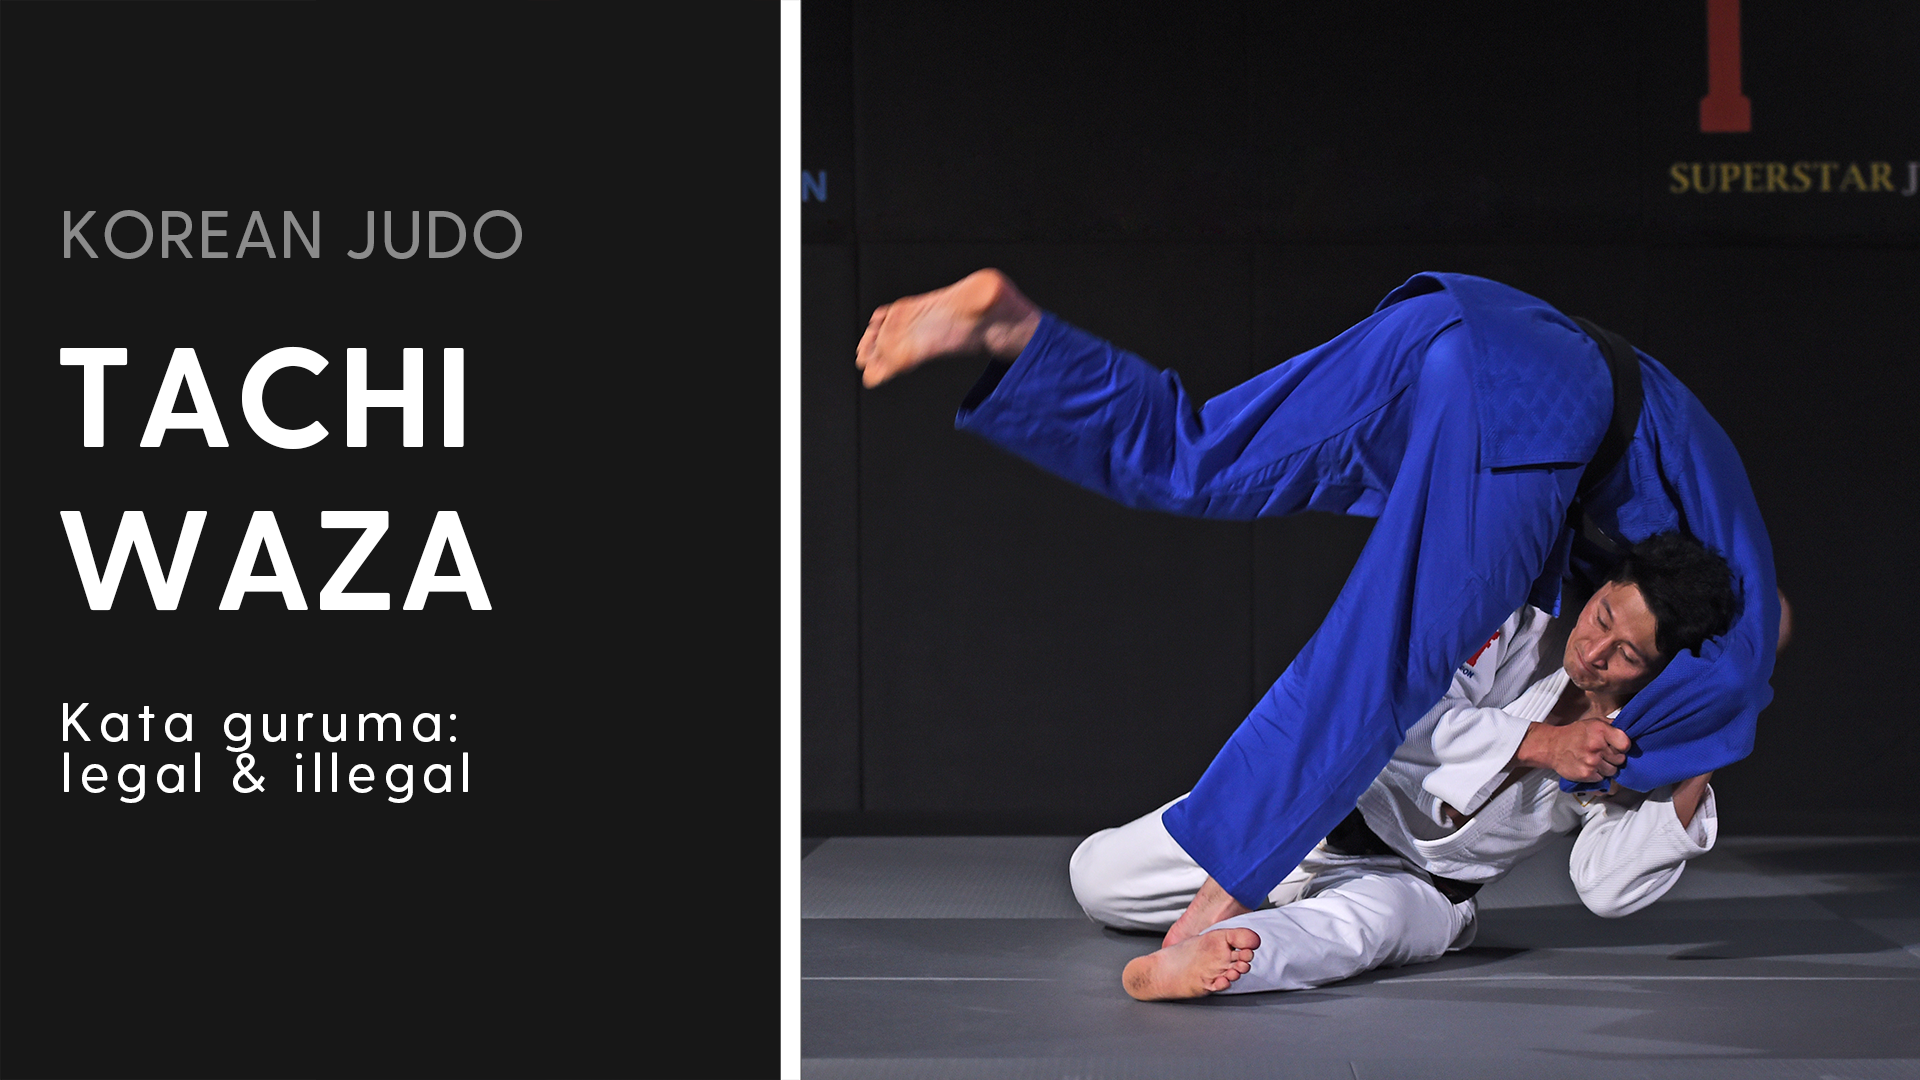 Kata guruma legal and illegal Korean Judo - Tachi-waza